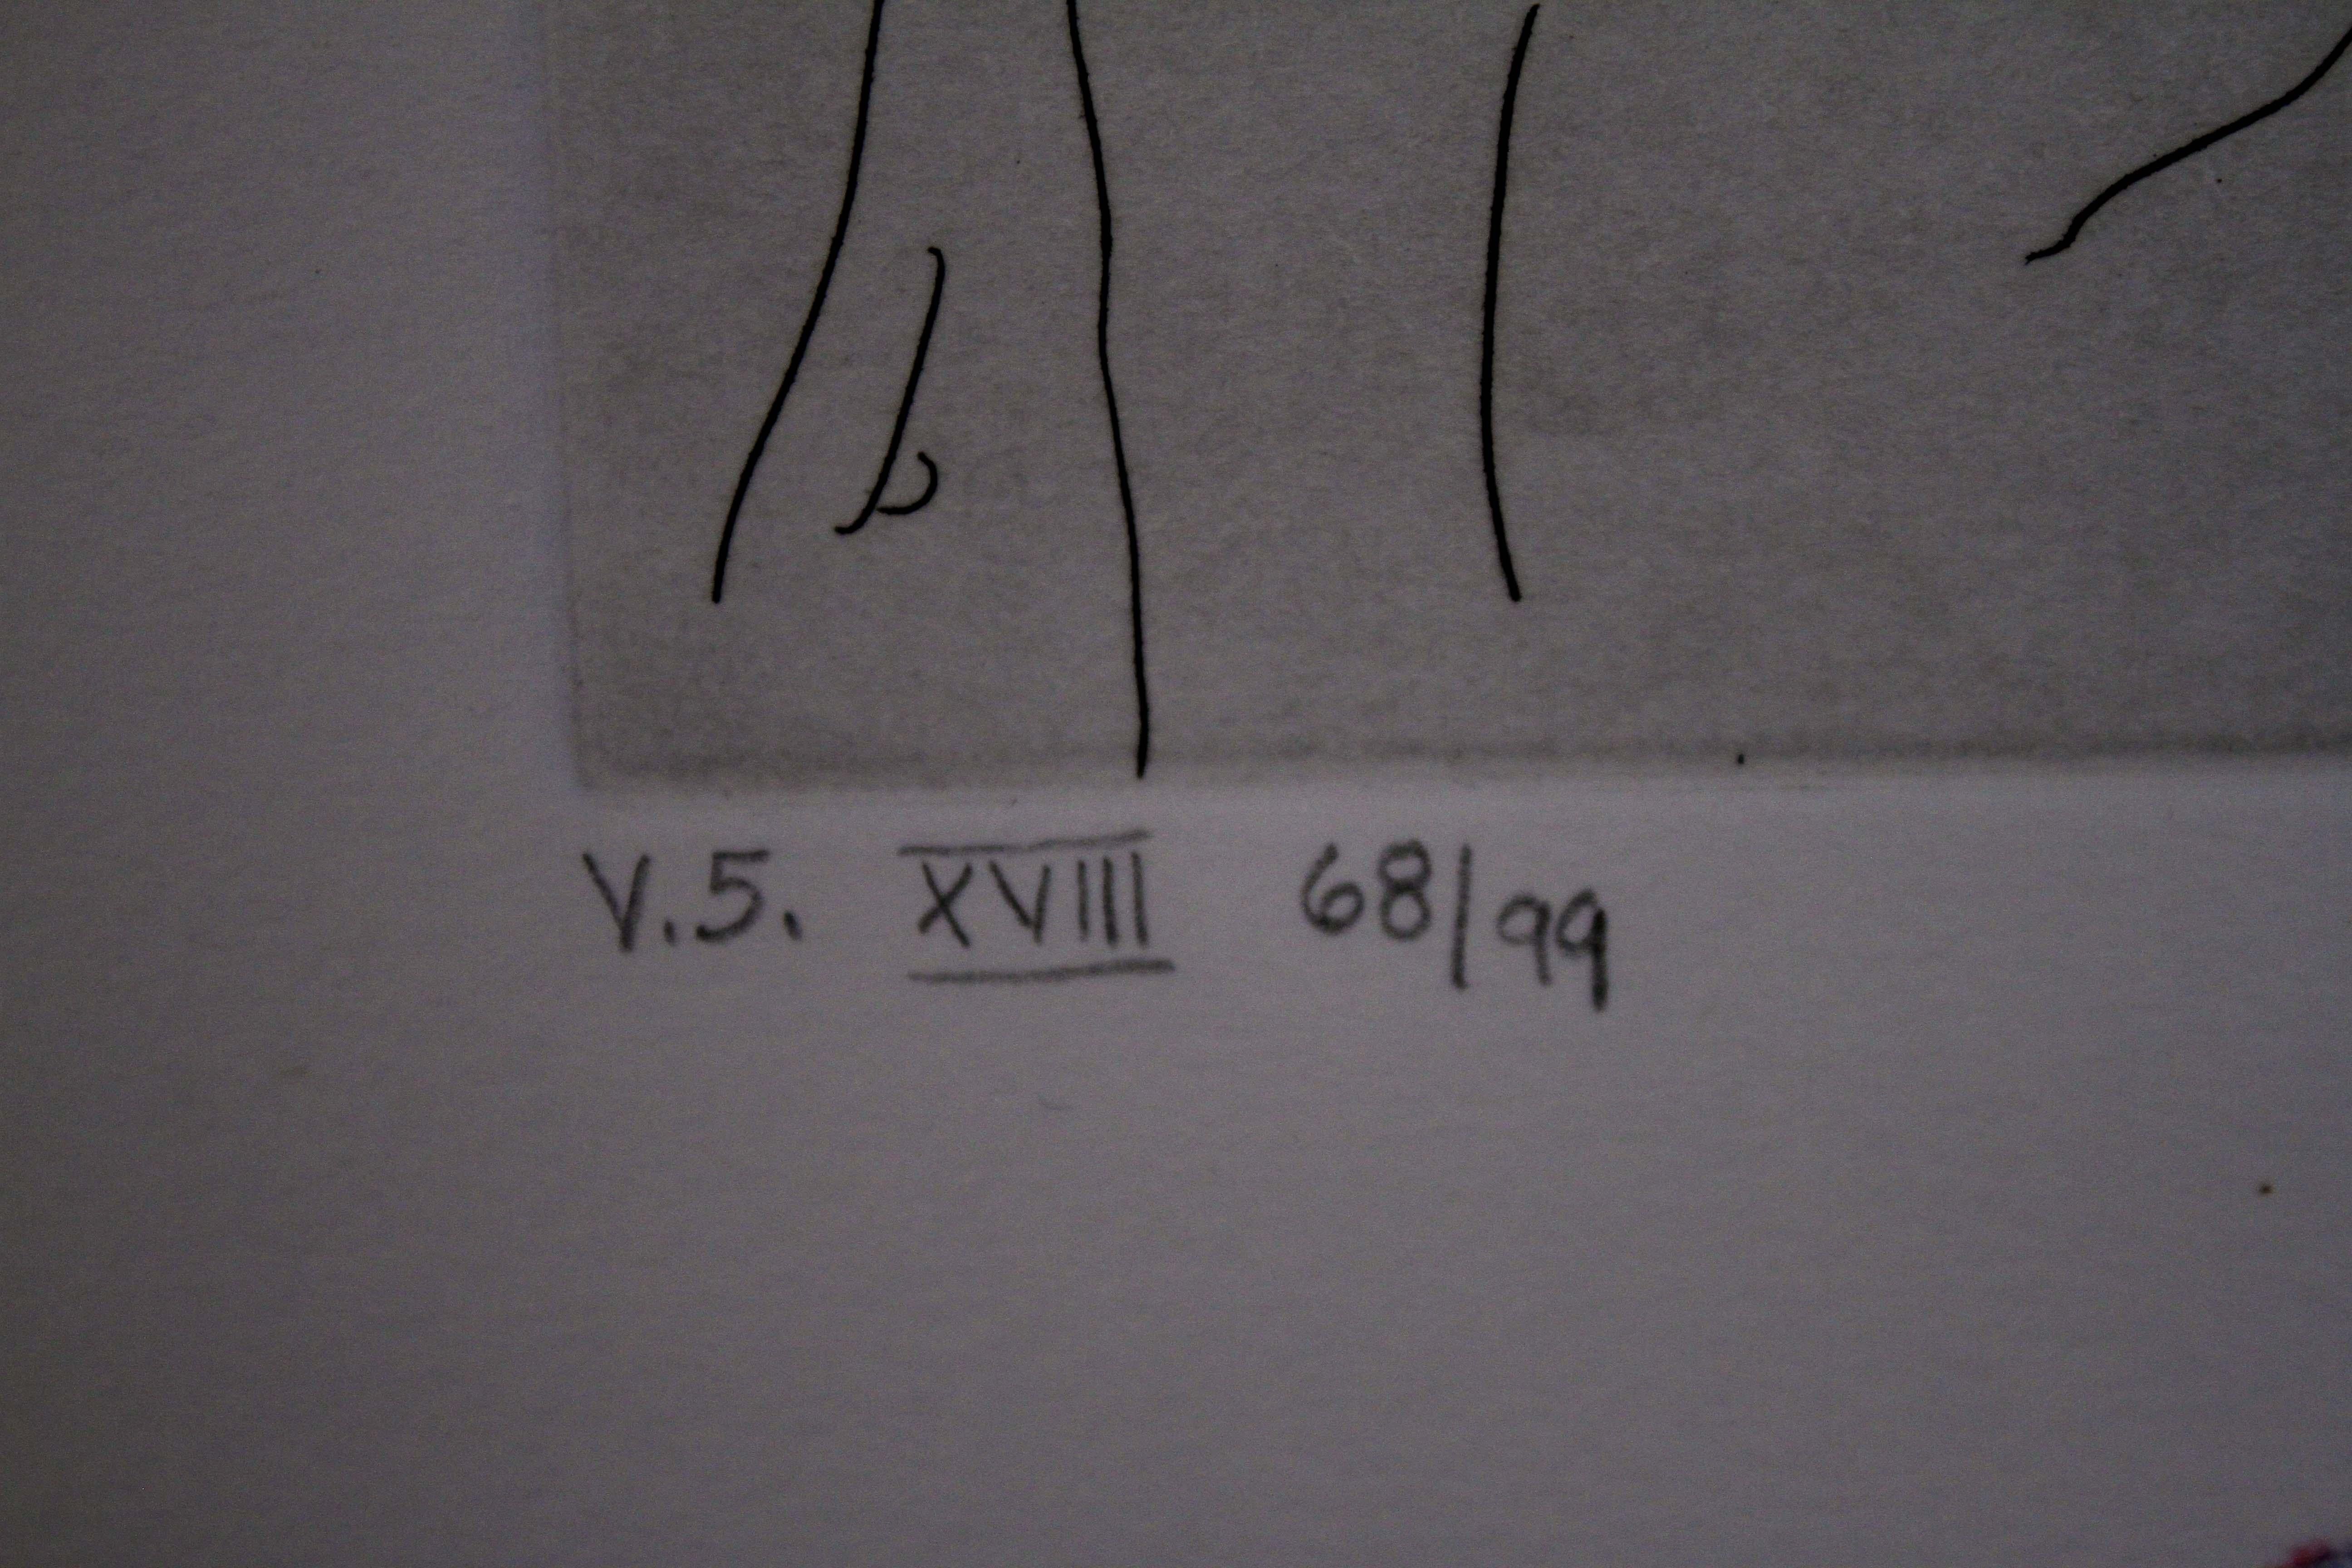 Peter Max Homage zu Picasso, Band 5, Radierung XVII, 1993, signiert 68/99, ungerahmt im Angebot 2